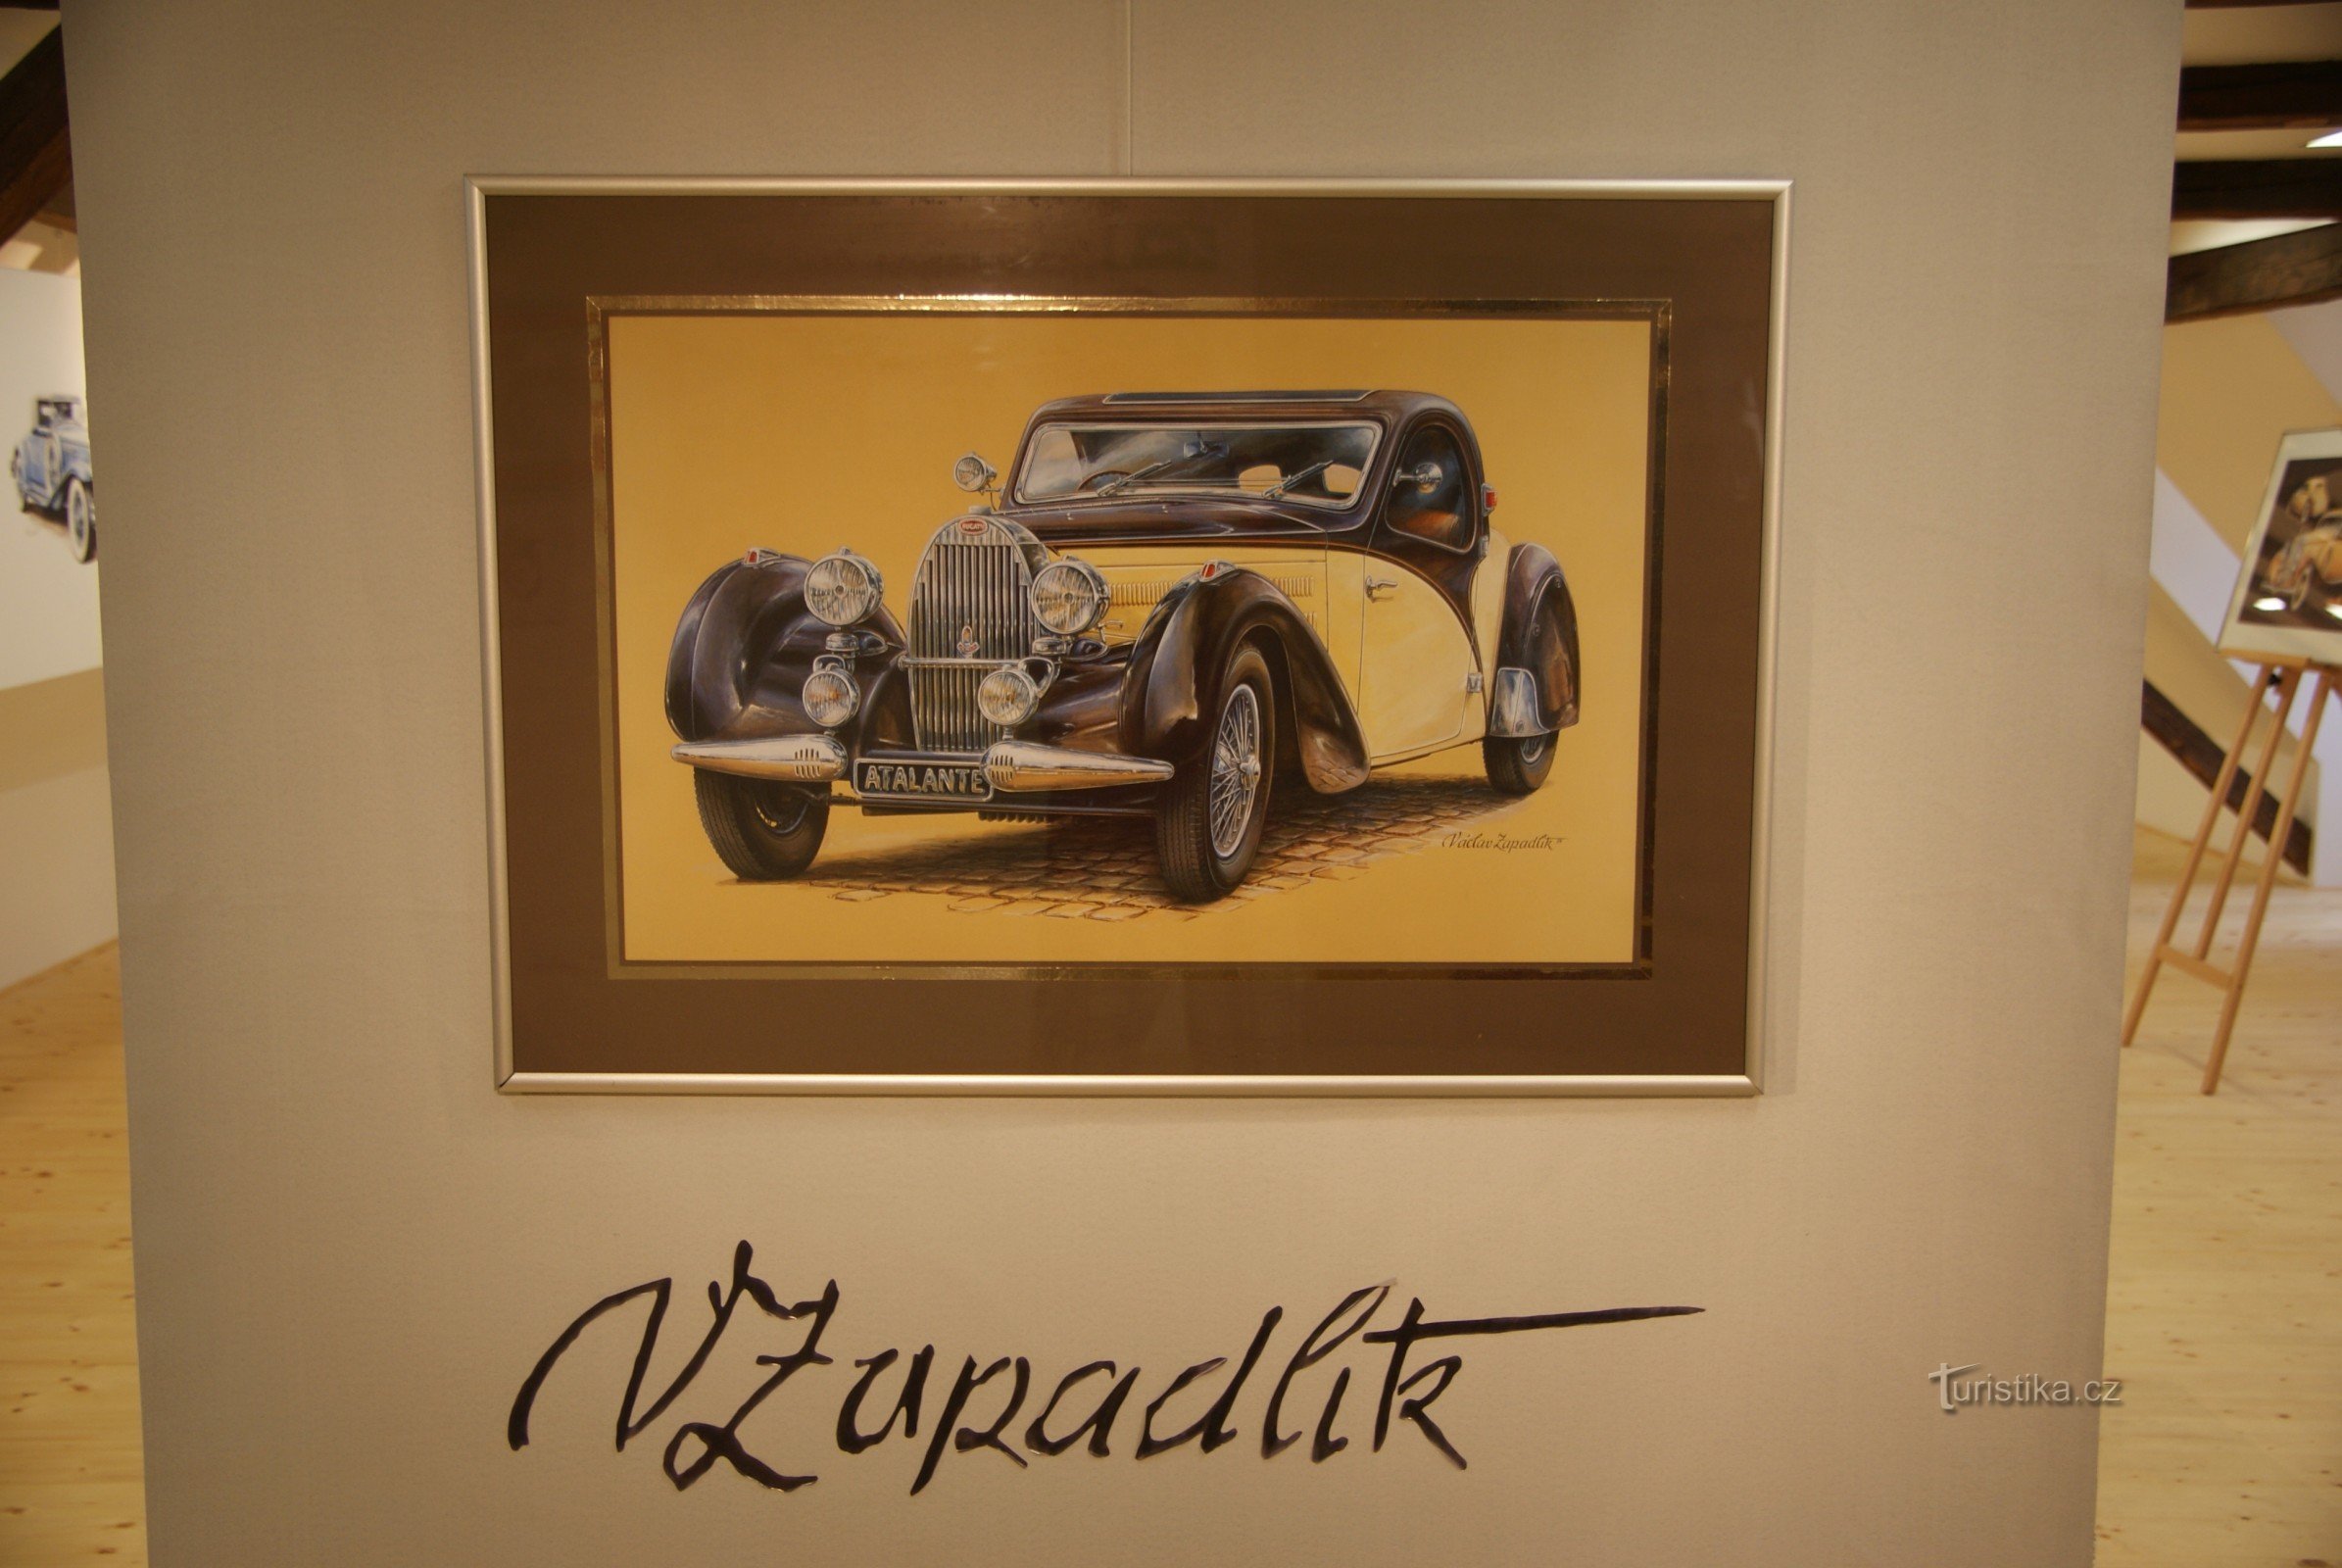 izložba "Slike automobilskog svijeta" Václava Zapadlíka